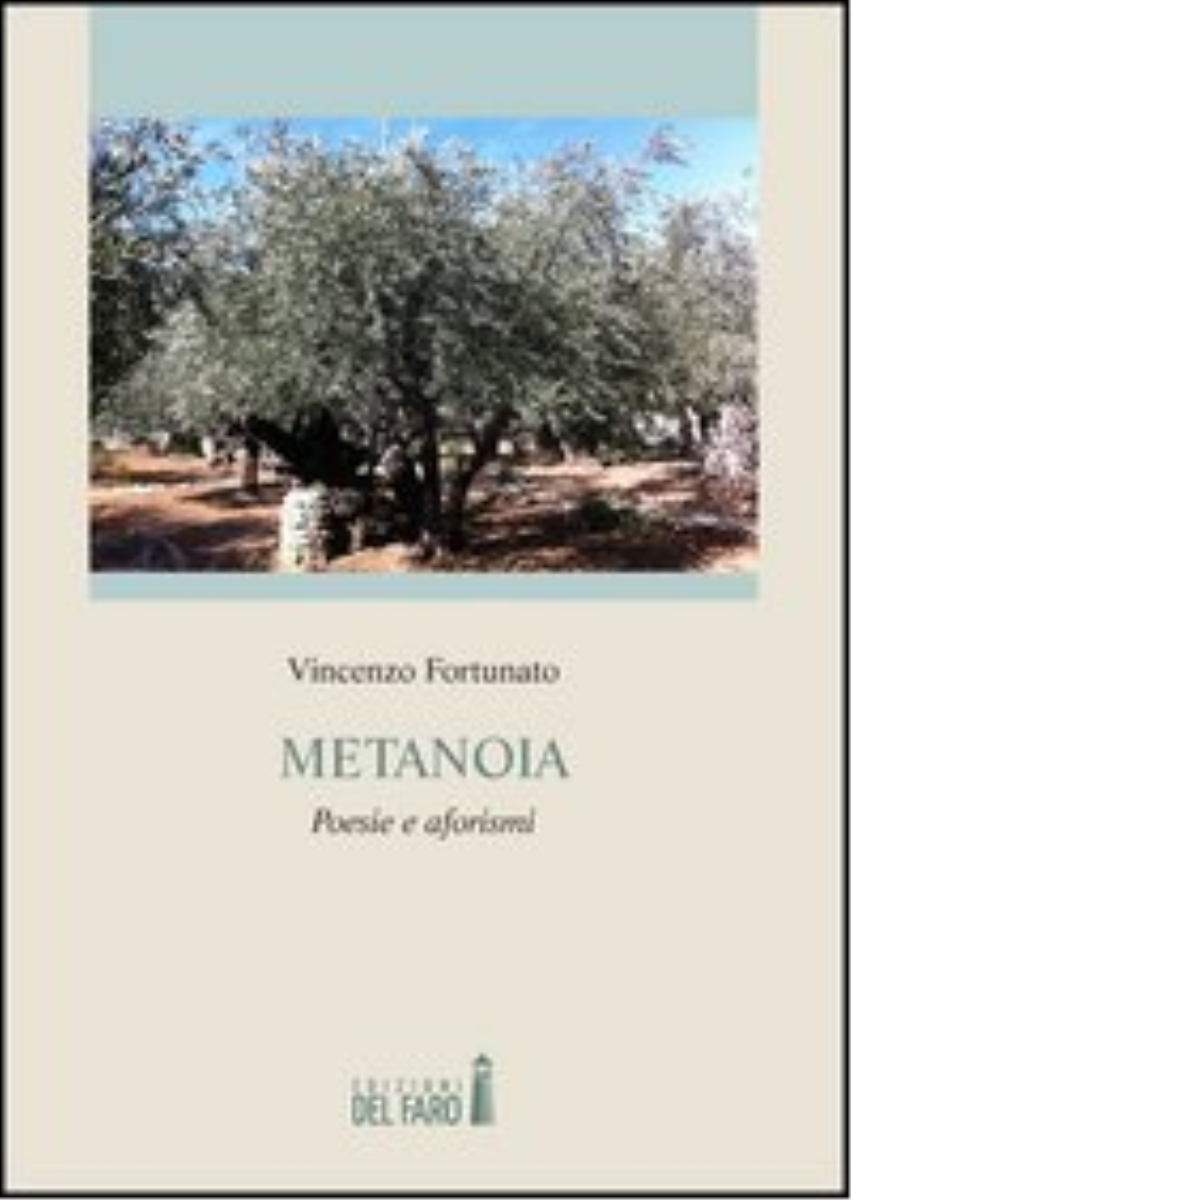 Metanoia. Poesie e aforismi di Fortunato Vincenzo - Del Faro, 2013